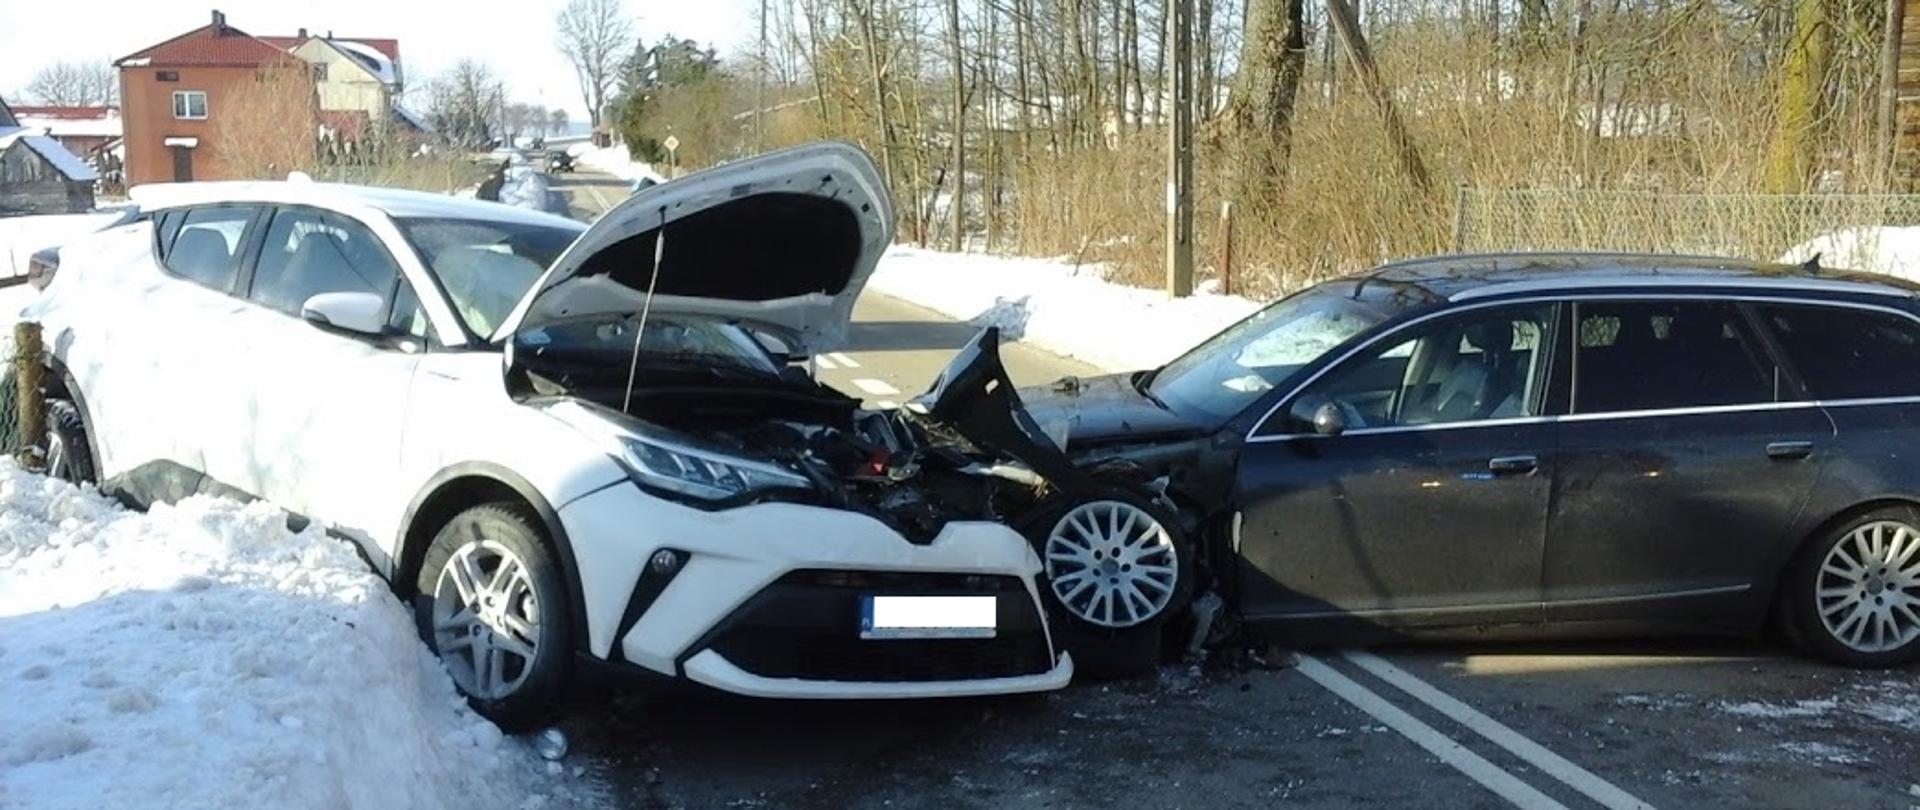 Na zdjęciu widać dwa rozbite auta osobowe. Białe auto Toyota znajduje się na skarpie śniegu